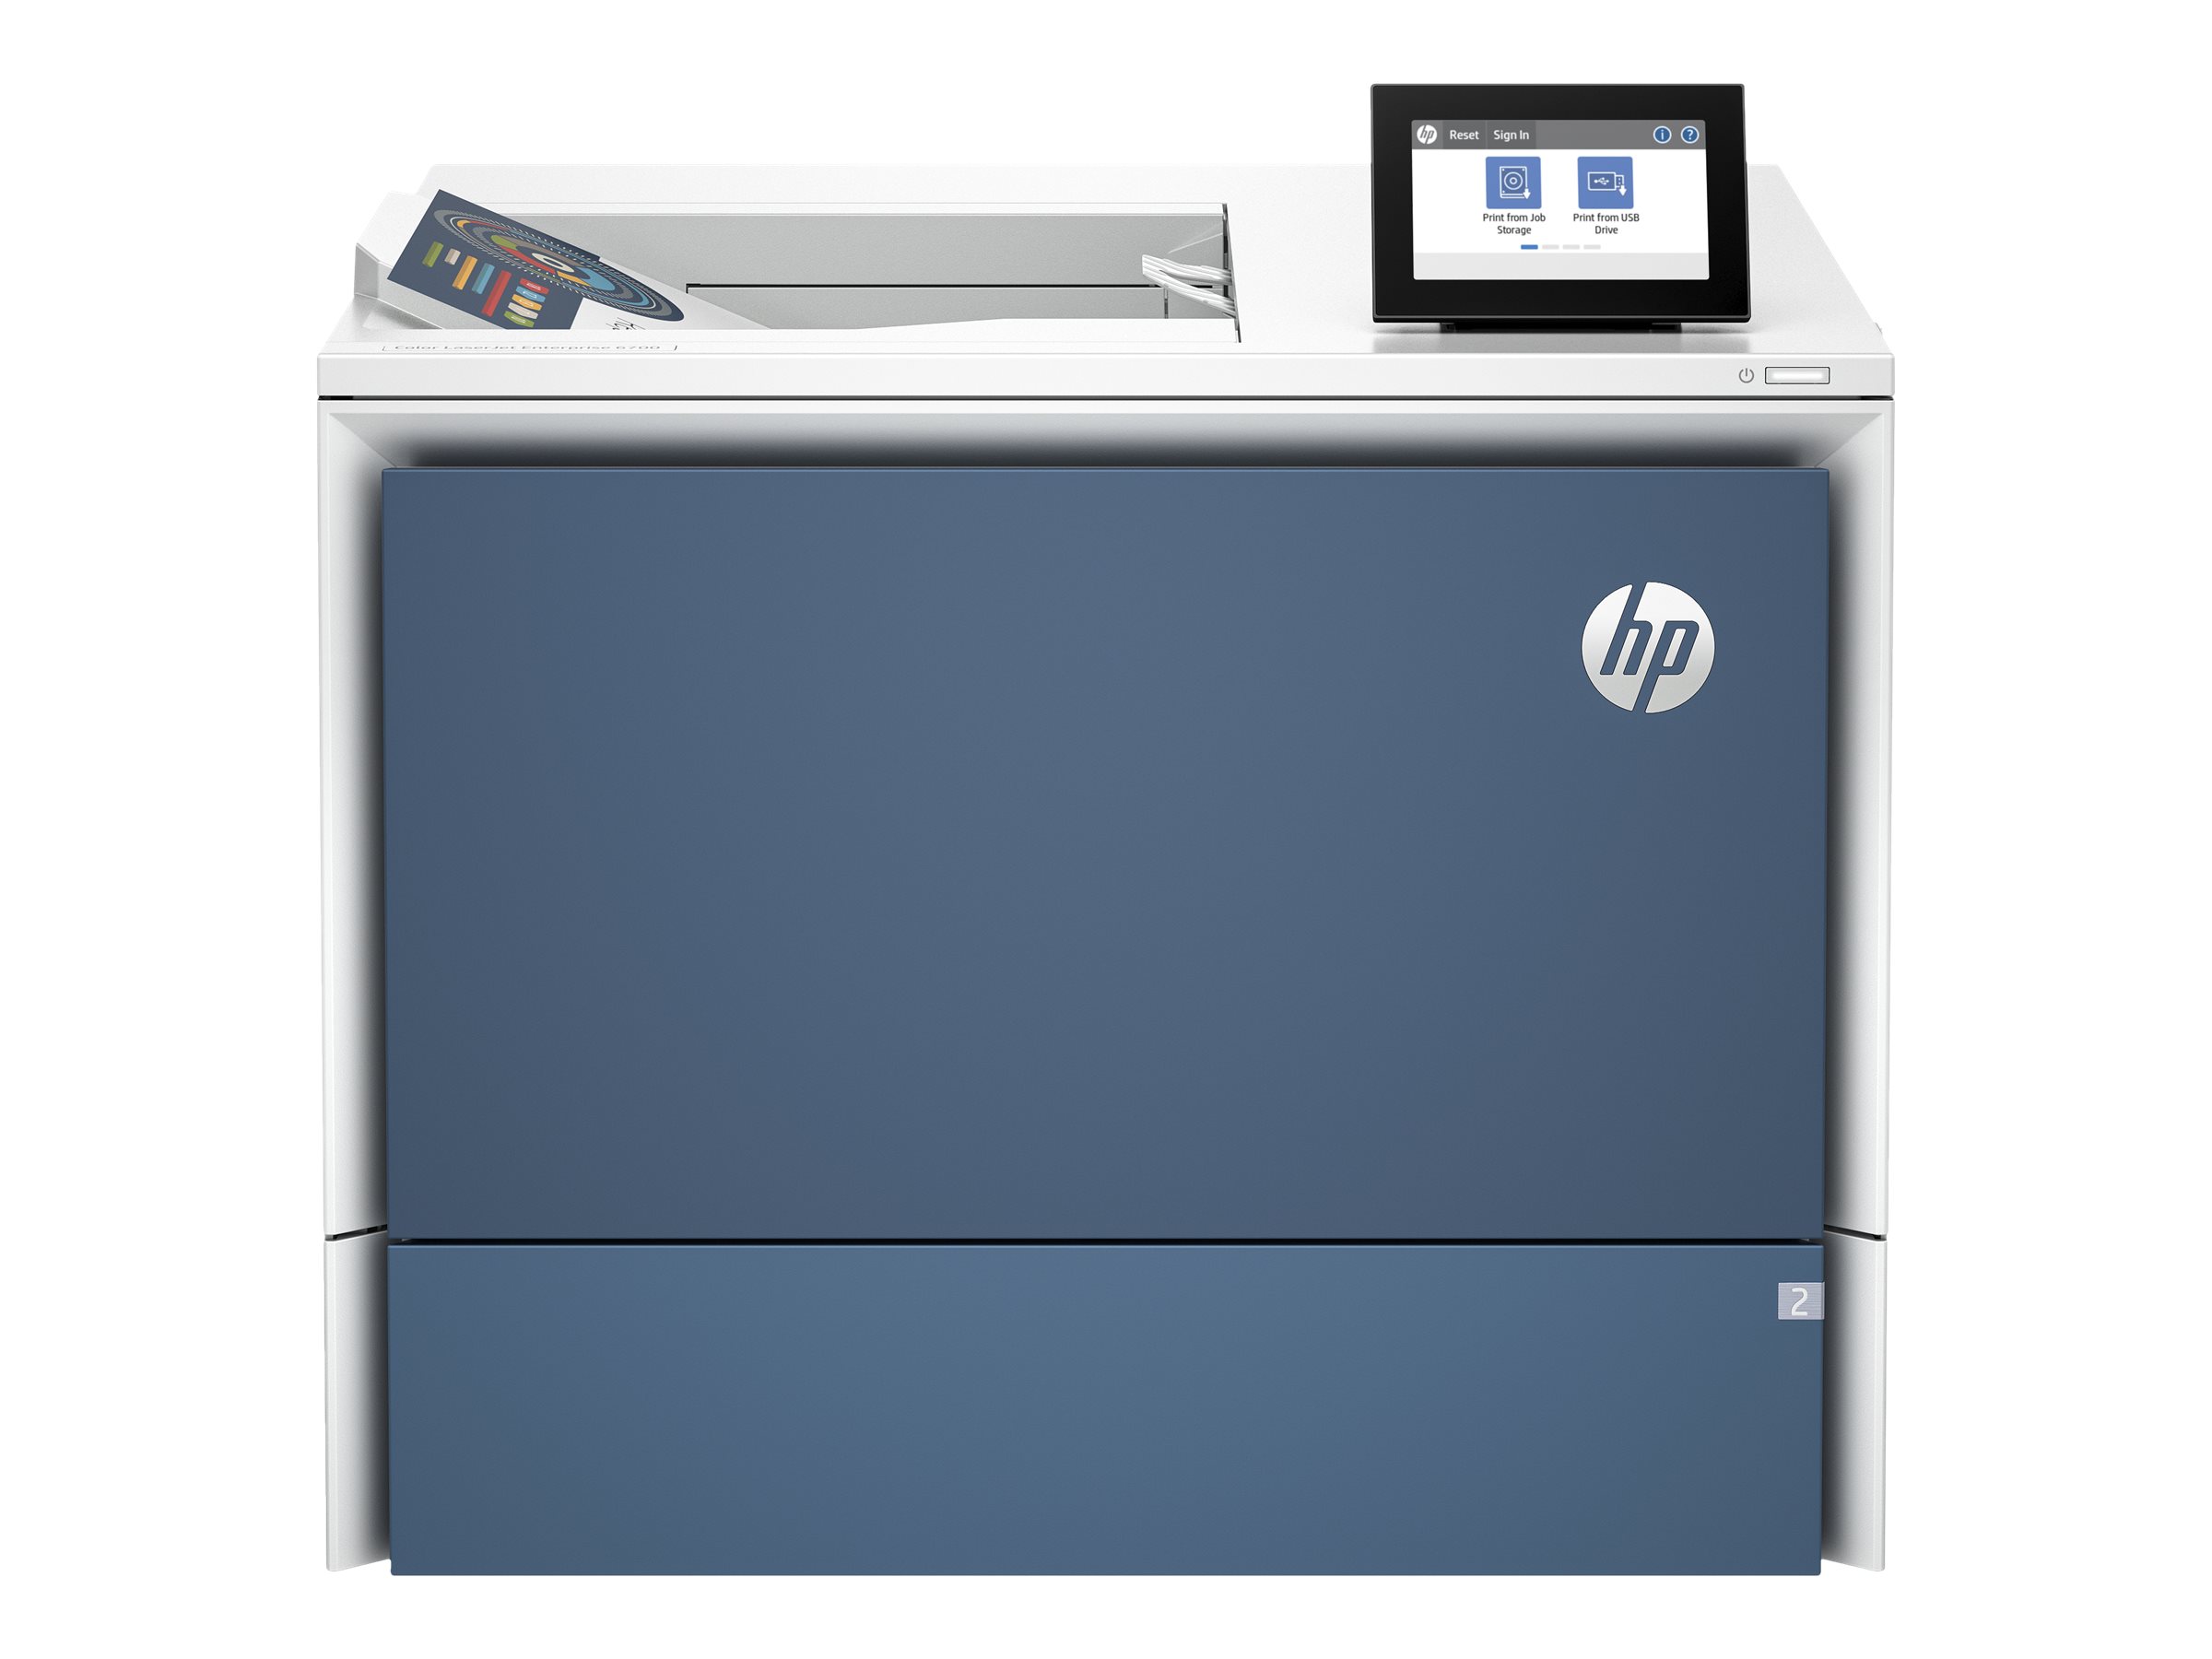 HP Color LaserJet Enterprise 6700dn - Imprimante - couleur - Recto-verso - laser - A4/Legal - 1200 x 1200 ppp - jusqu'à 52 ppm (mono)/jusqu'à 52 ppm (couleur) - capacité : 650 feuilles - Gigabit LAN, USB 3.0, hôte USB 2.0, hôte USB 3.0 - 6QN33A#B19 - Imprimantes laser couleur